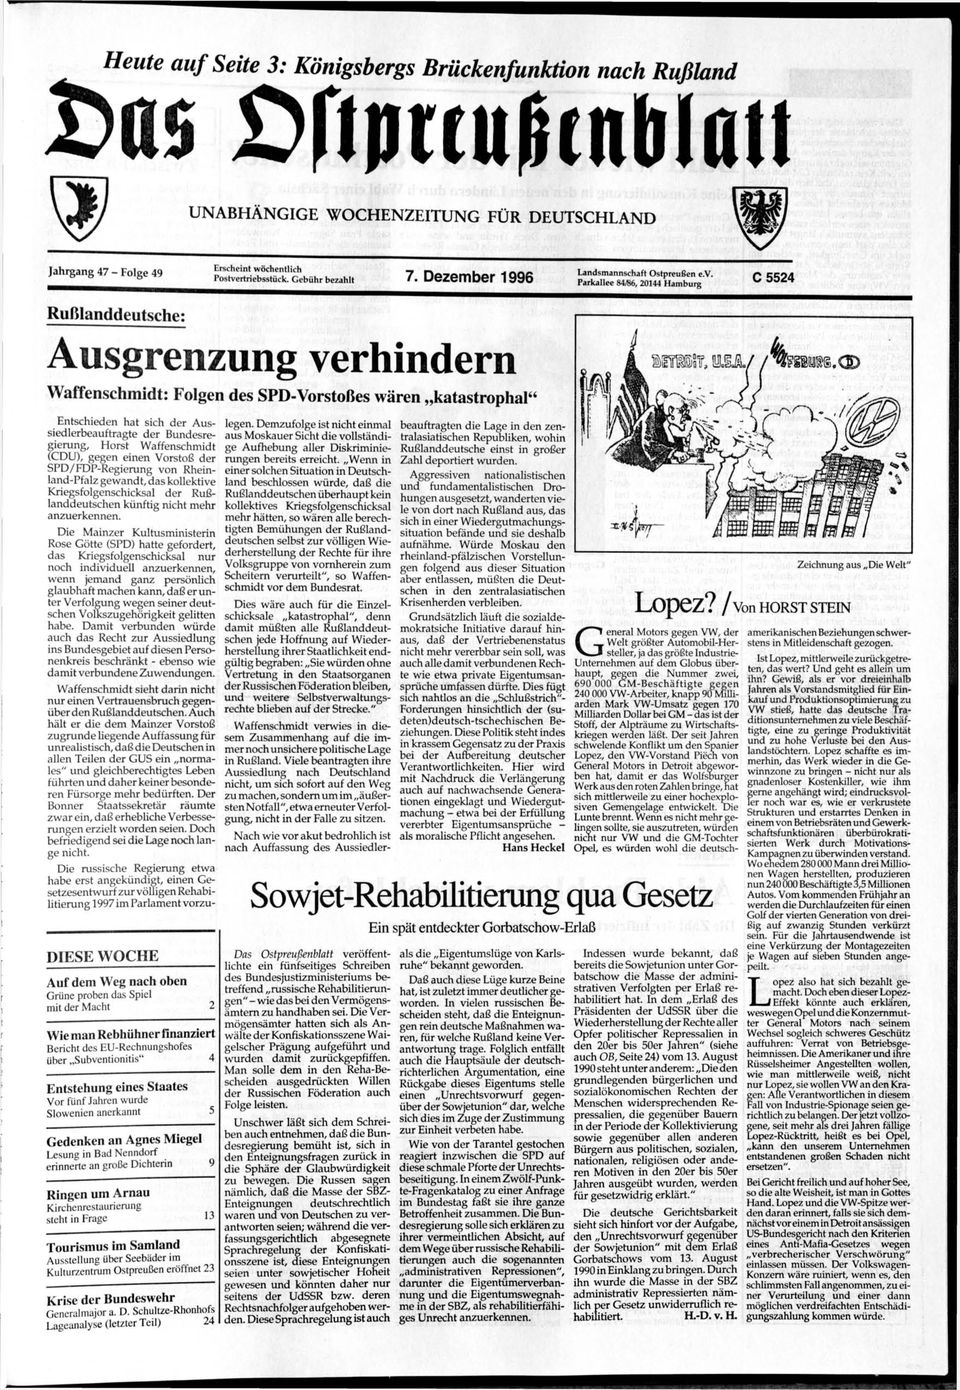 Parkallee 84/B6, 20144 Hamburg f» EE04 ^ Rußlanddeutsche: Ausgrenzung verhindern Waffenschmidt: Folgen des SPD-Vorstoßes wären katastrophal" Entschieden hat sich der Aussiedlerbeauftragte der